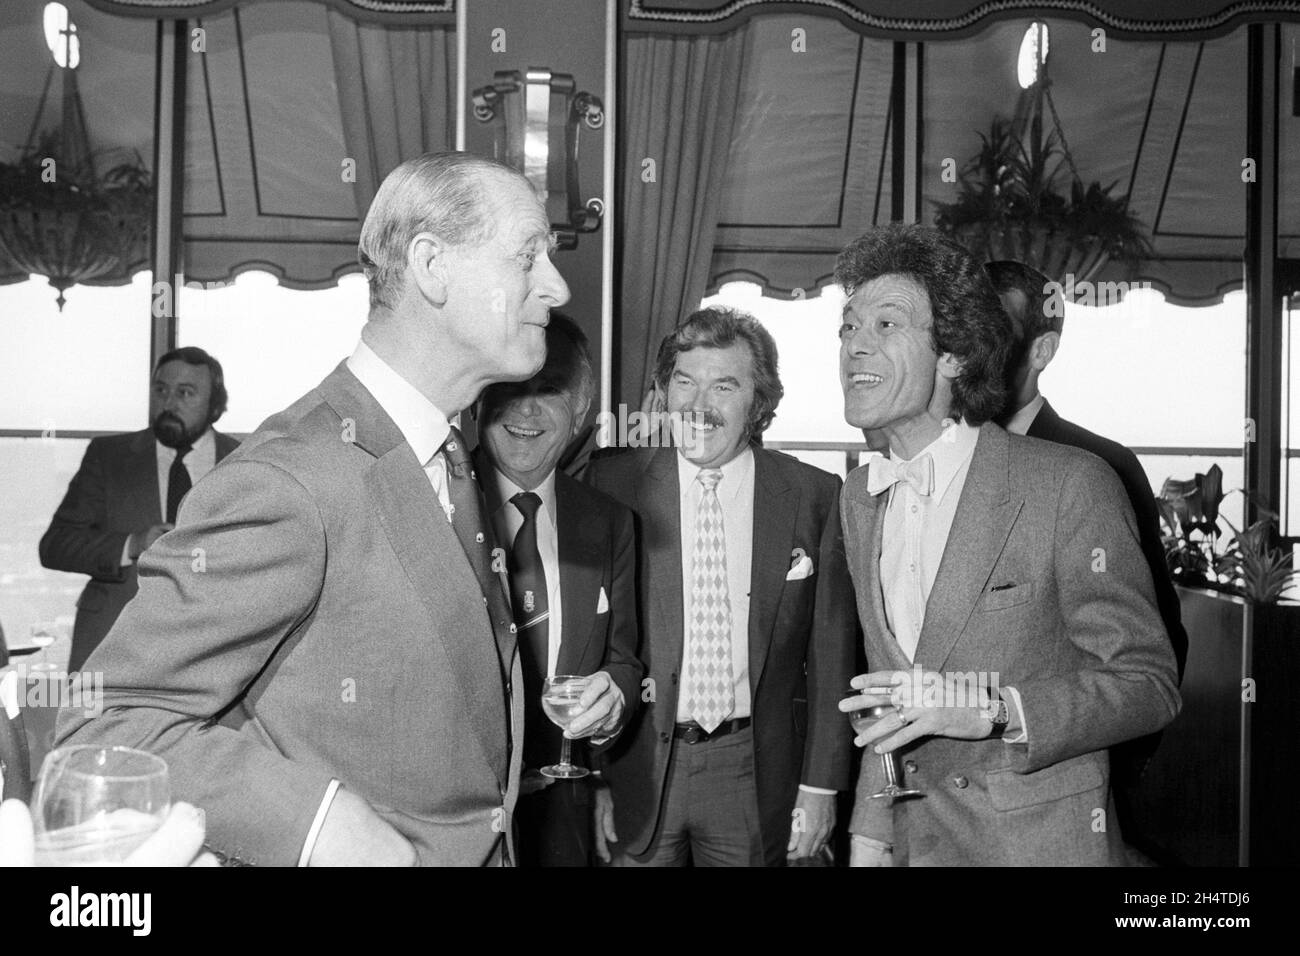 Foto del file datata 11/5/1982 del Duca di Edimburgo (a sinistra) e dell'intrattenitore Lionel Blair (a destra) che è stato seguito dal commentatore sportivo Dickie Davies (baffi) e dall'attore Sir John Mills (parzialmente nascosto) al Variety Club Luncheon per l'Outbound Trust nell'Hilton Hotel, Il veterano di London Showbiz Blair è morto all'età di 92 anni, il suo agente ha detto all'agenzia di stampa PA. Data di emissione: Giovedì 4 novembre 2021. Foto Stock